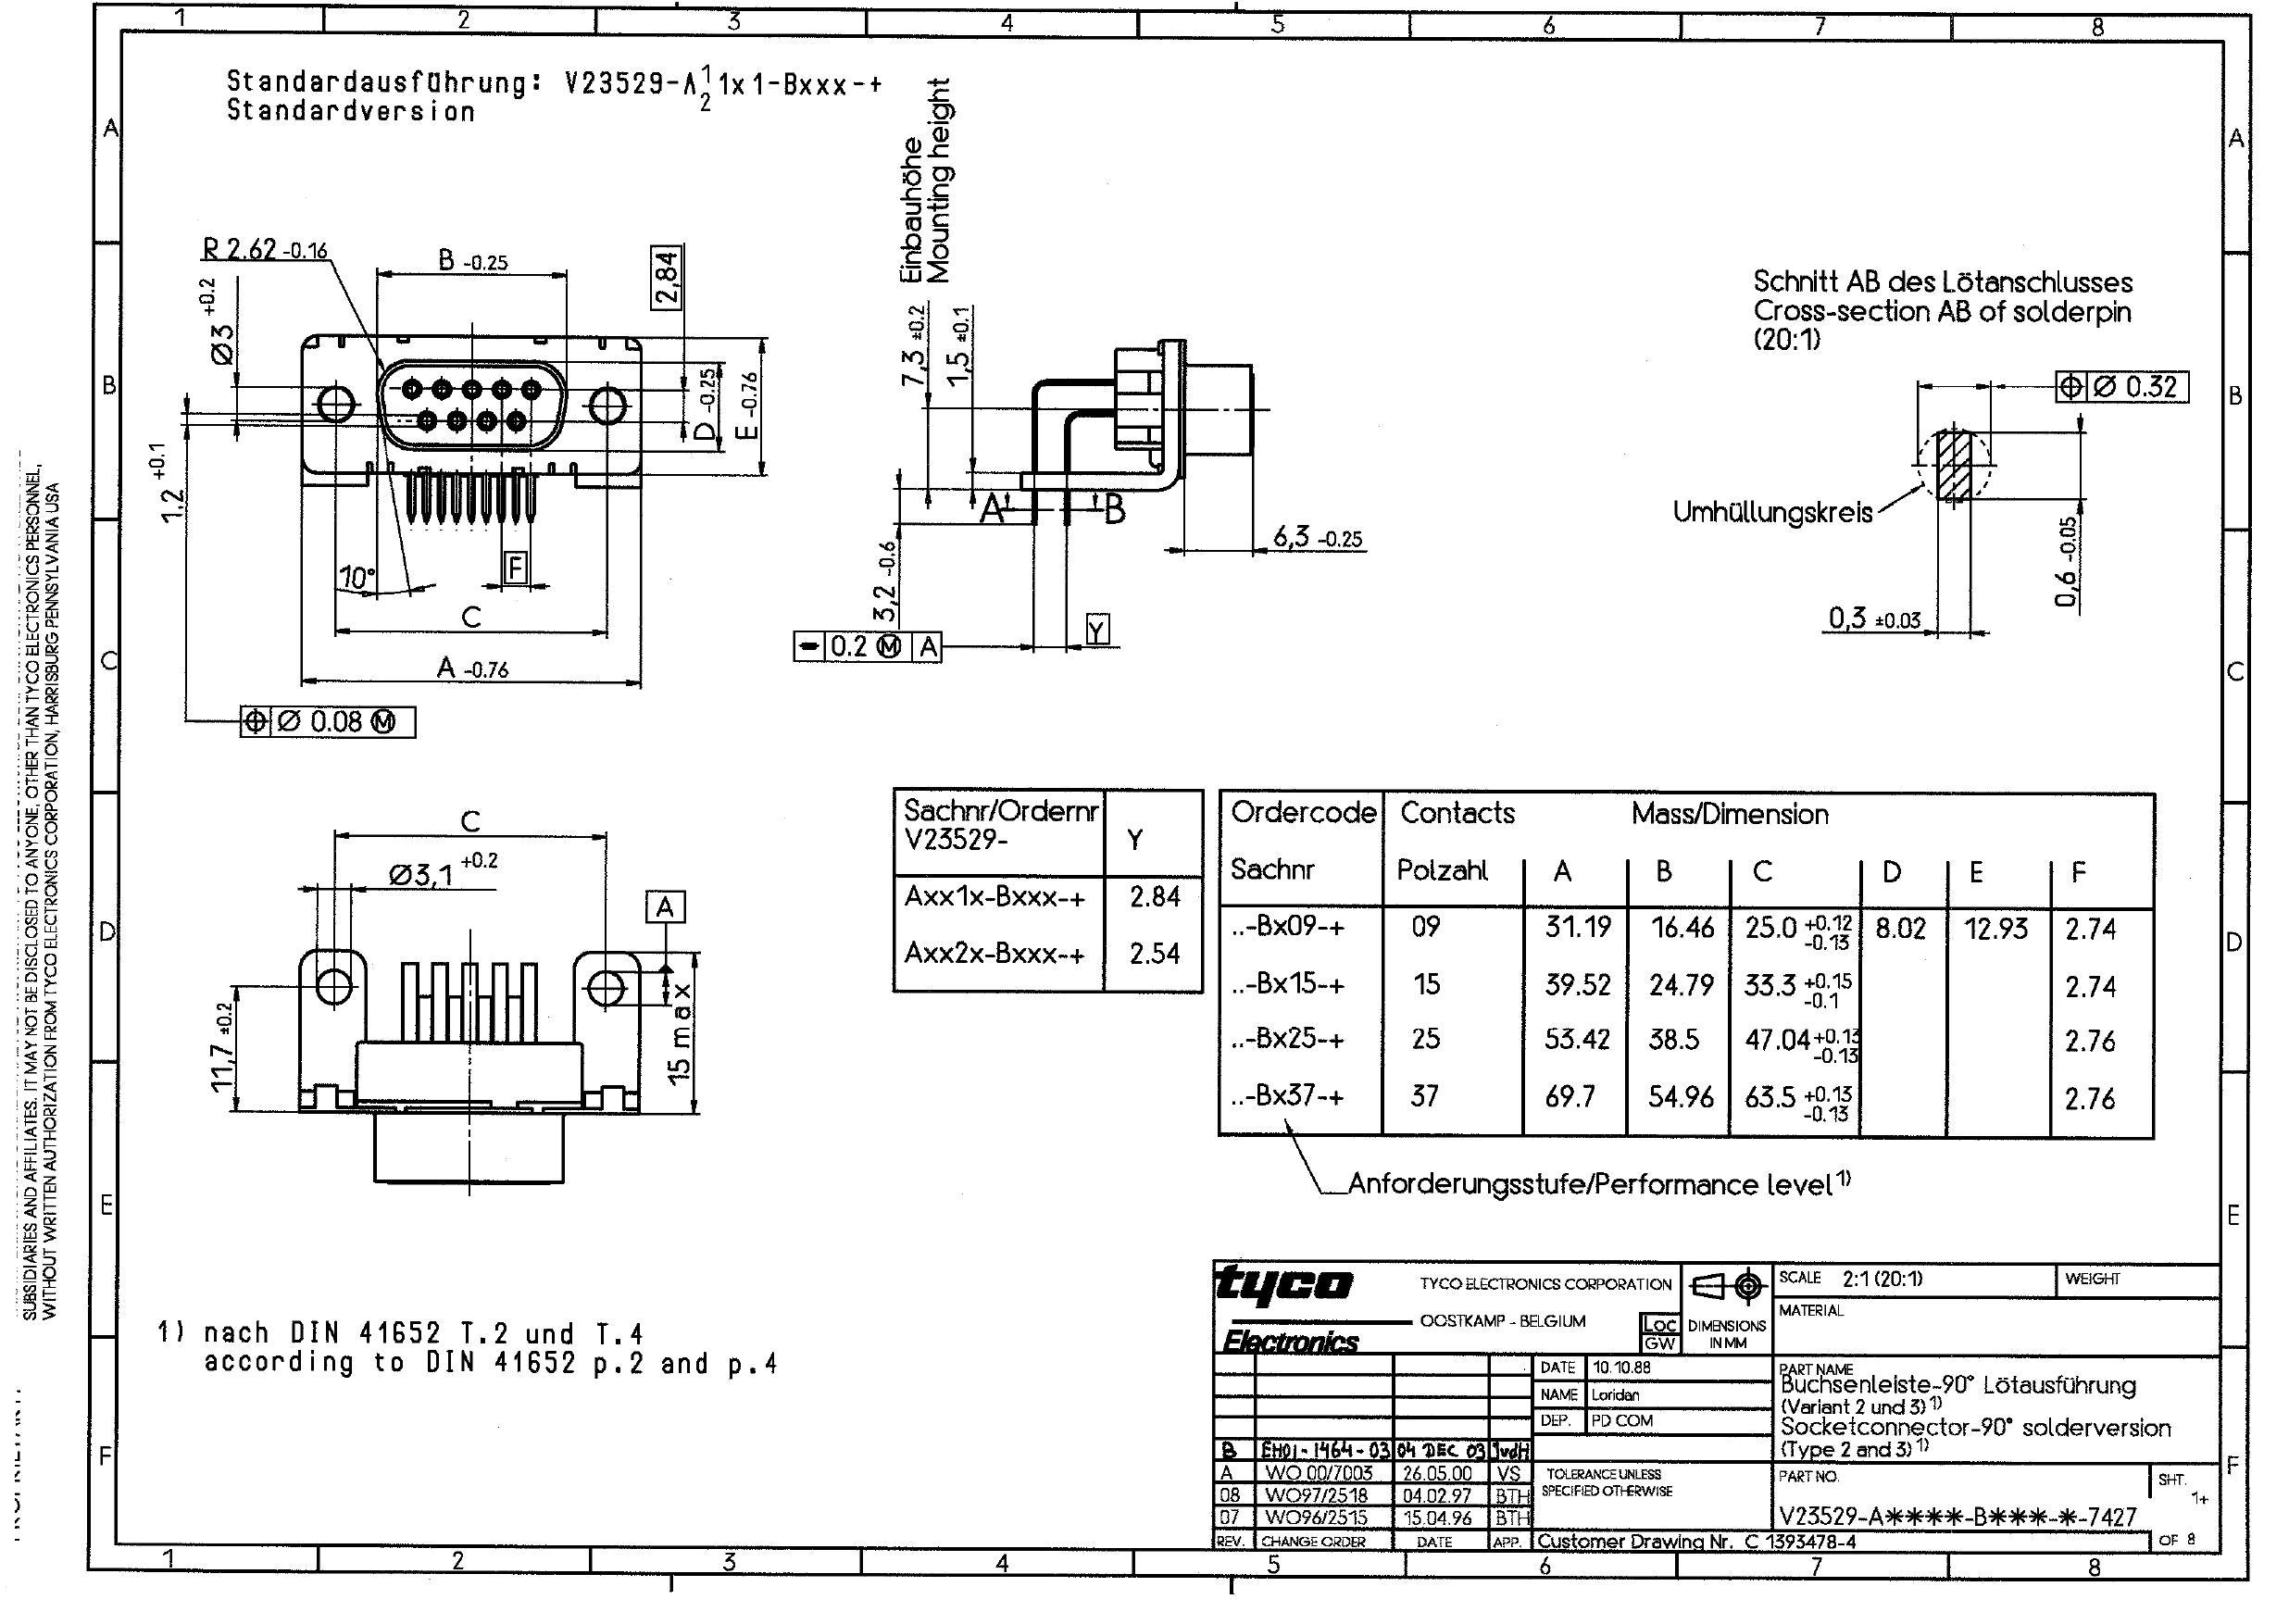 v23529-axxix-bxxx--socket-connector.pdf